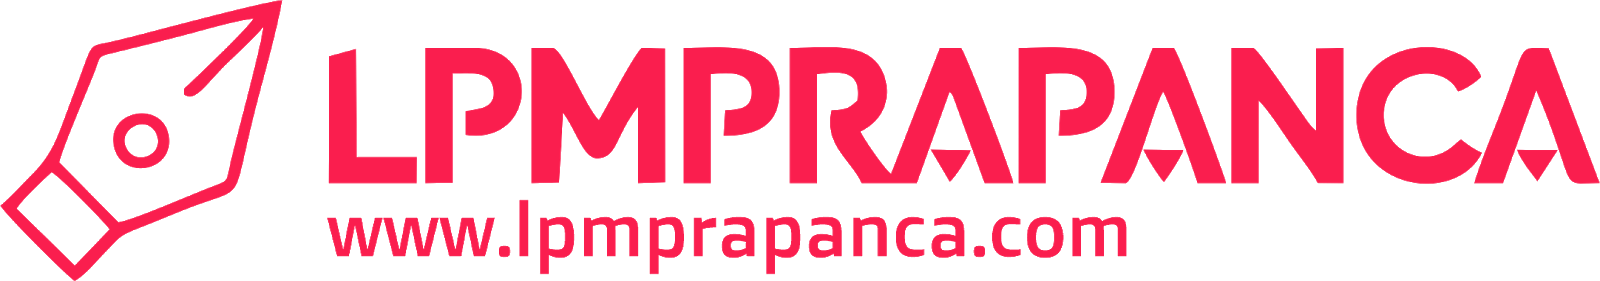 Lpmprapanca.com